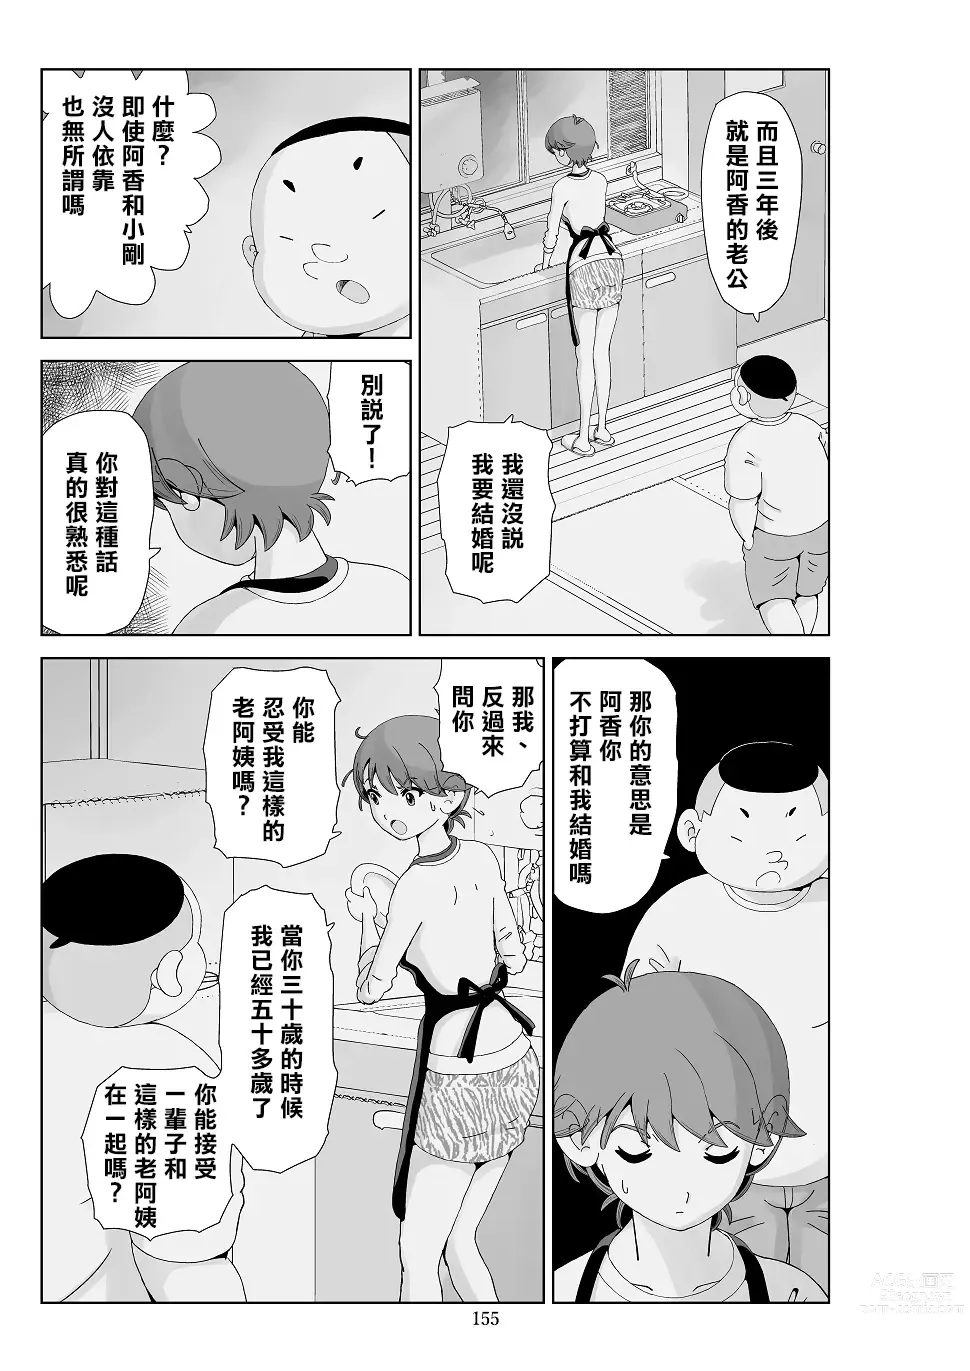 Page 157 of doujinshi Futoshi 3